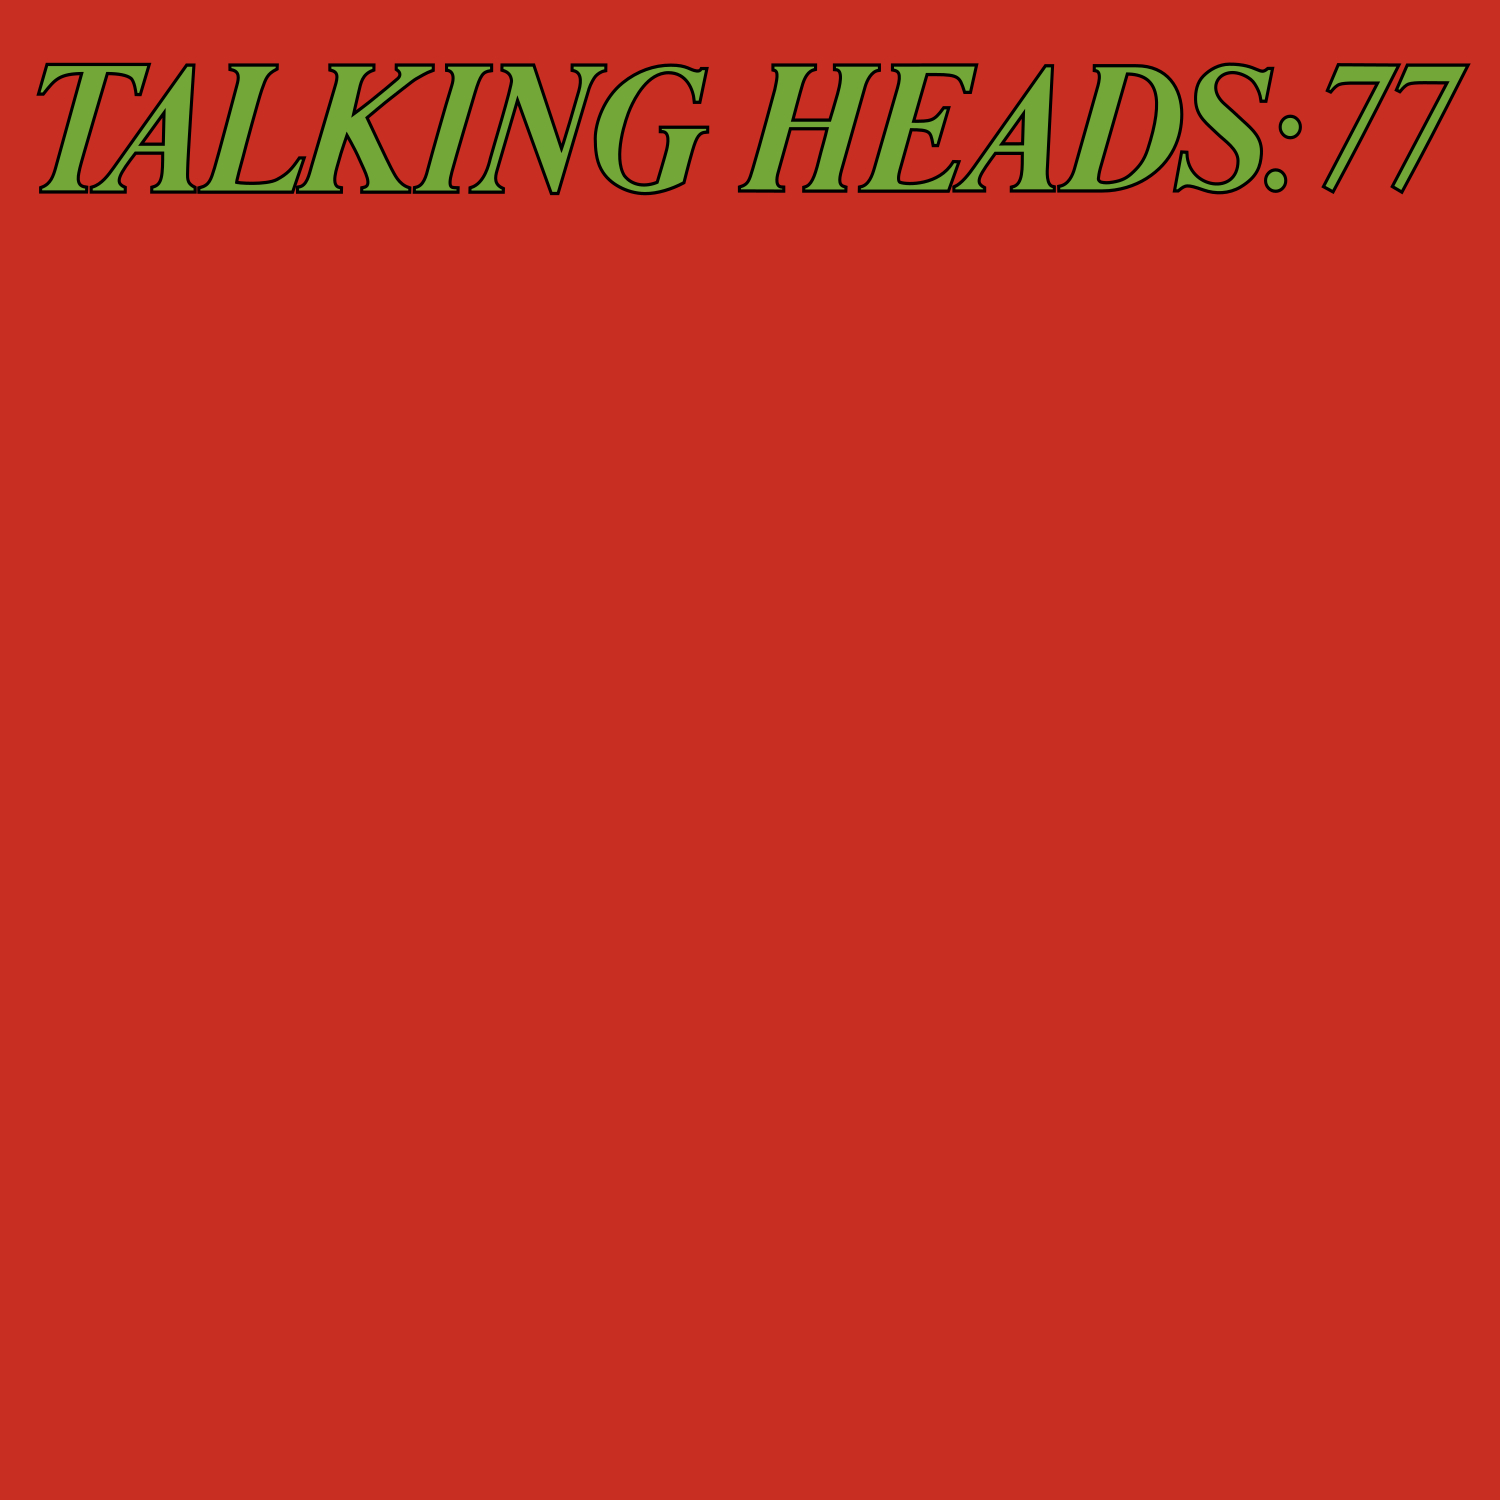 Talking Heads 77.jpg